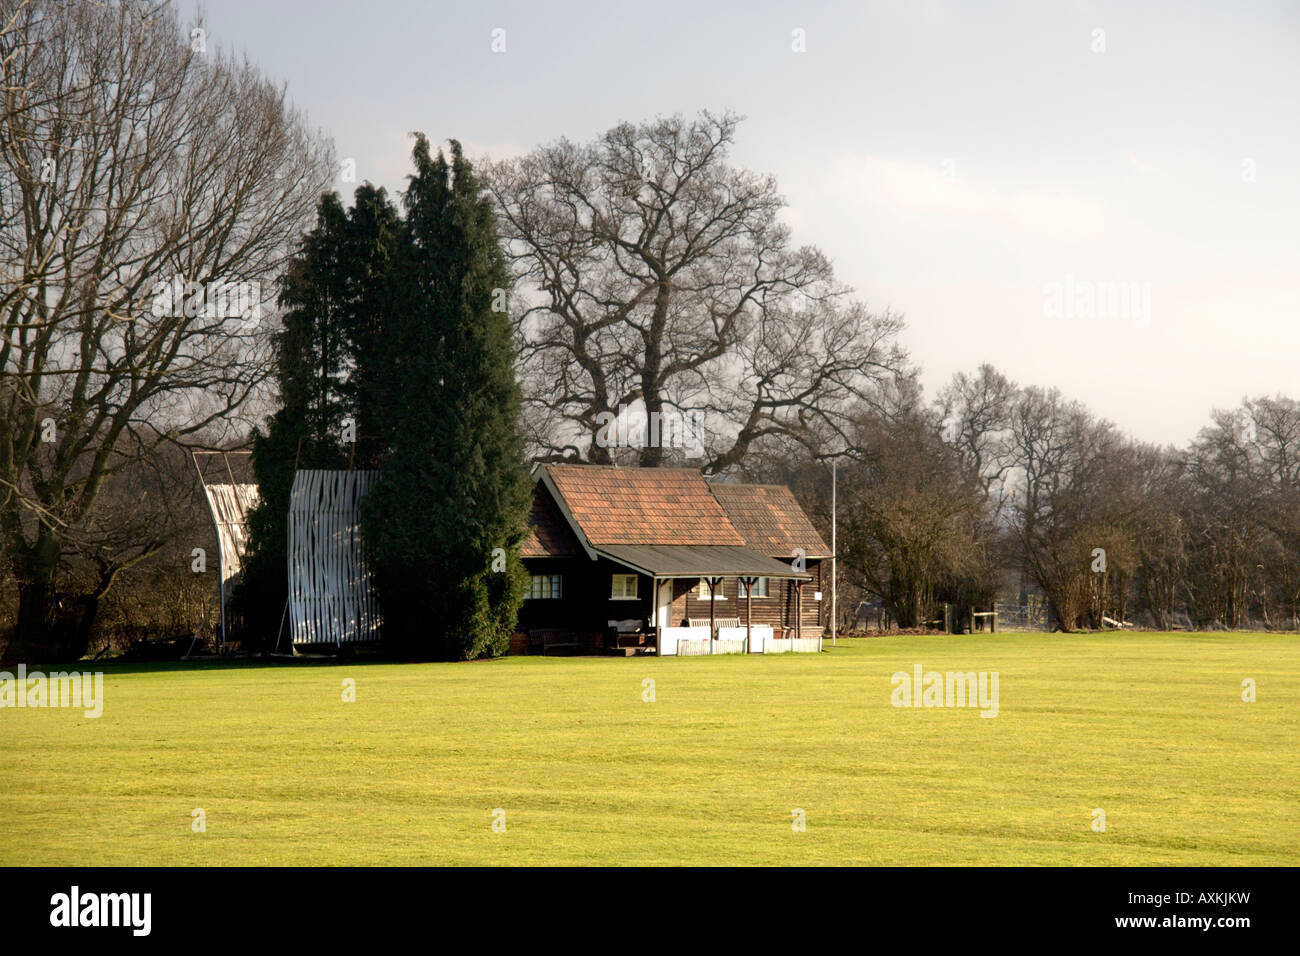 A cricket pitch and pavillion Stock Photo